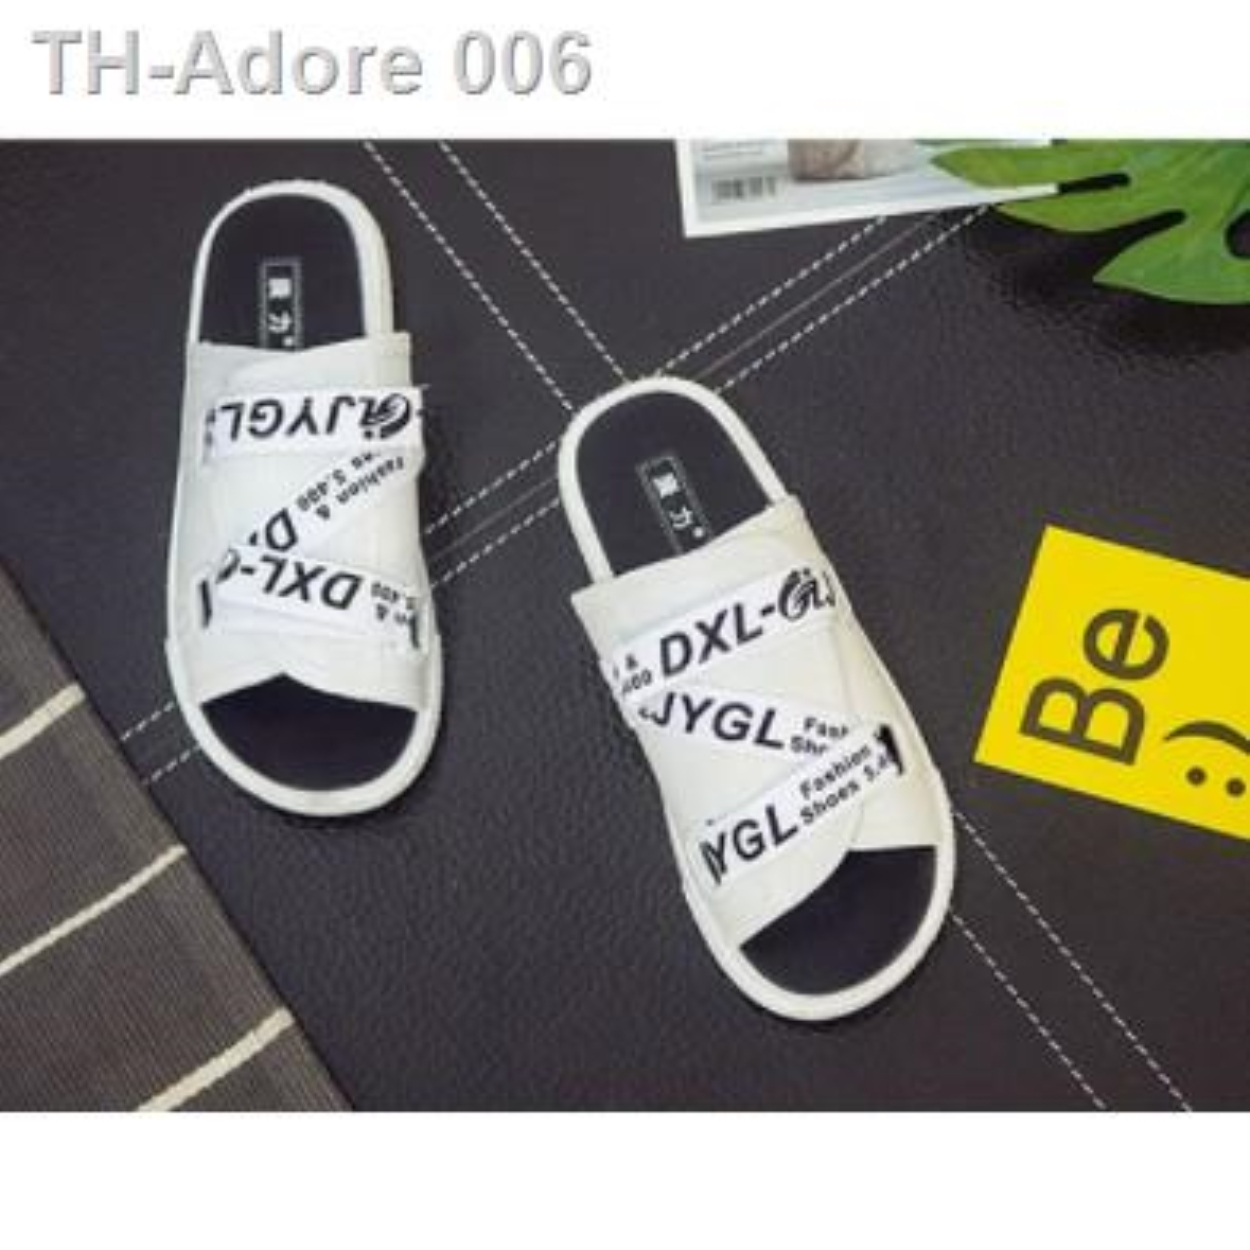 TT003รองเท้าแตะสไตล์เกาหลีฤดูร้อนของผู้ชาย แบบสวมสไตล์เท่น์ๆใส่เป็นคู่ชาย-หญิงใส่สบายไม่ลื่นมีไซส์39-44WhiteBlack